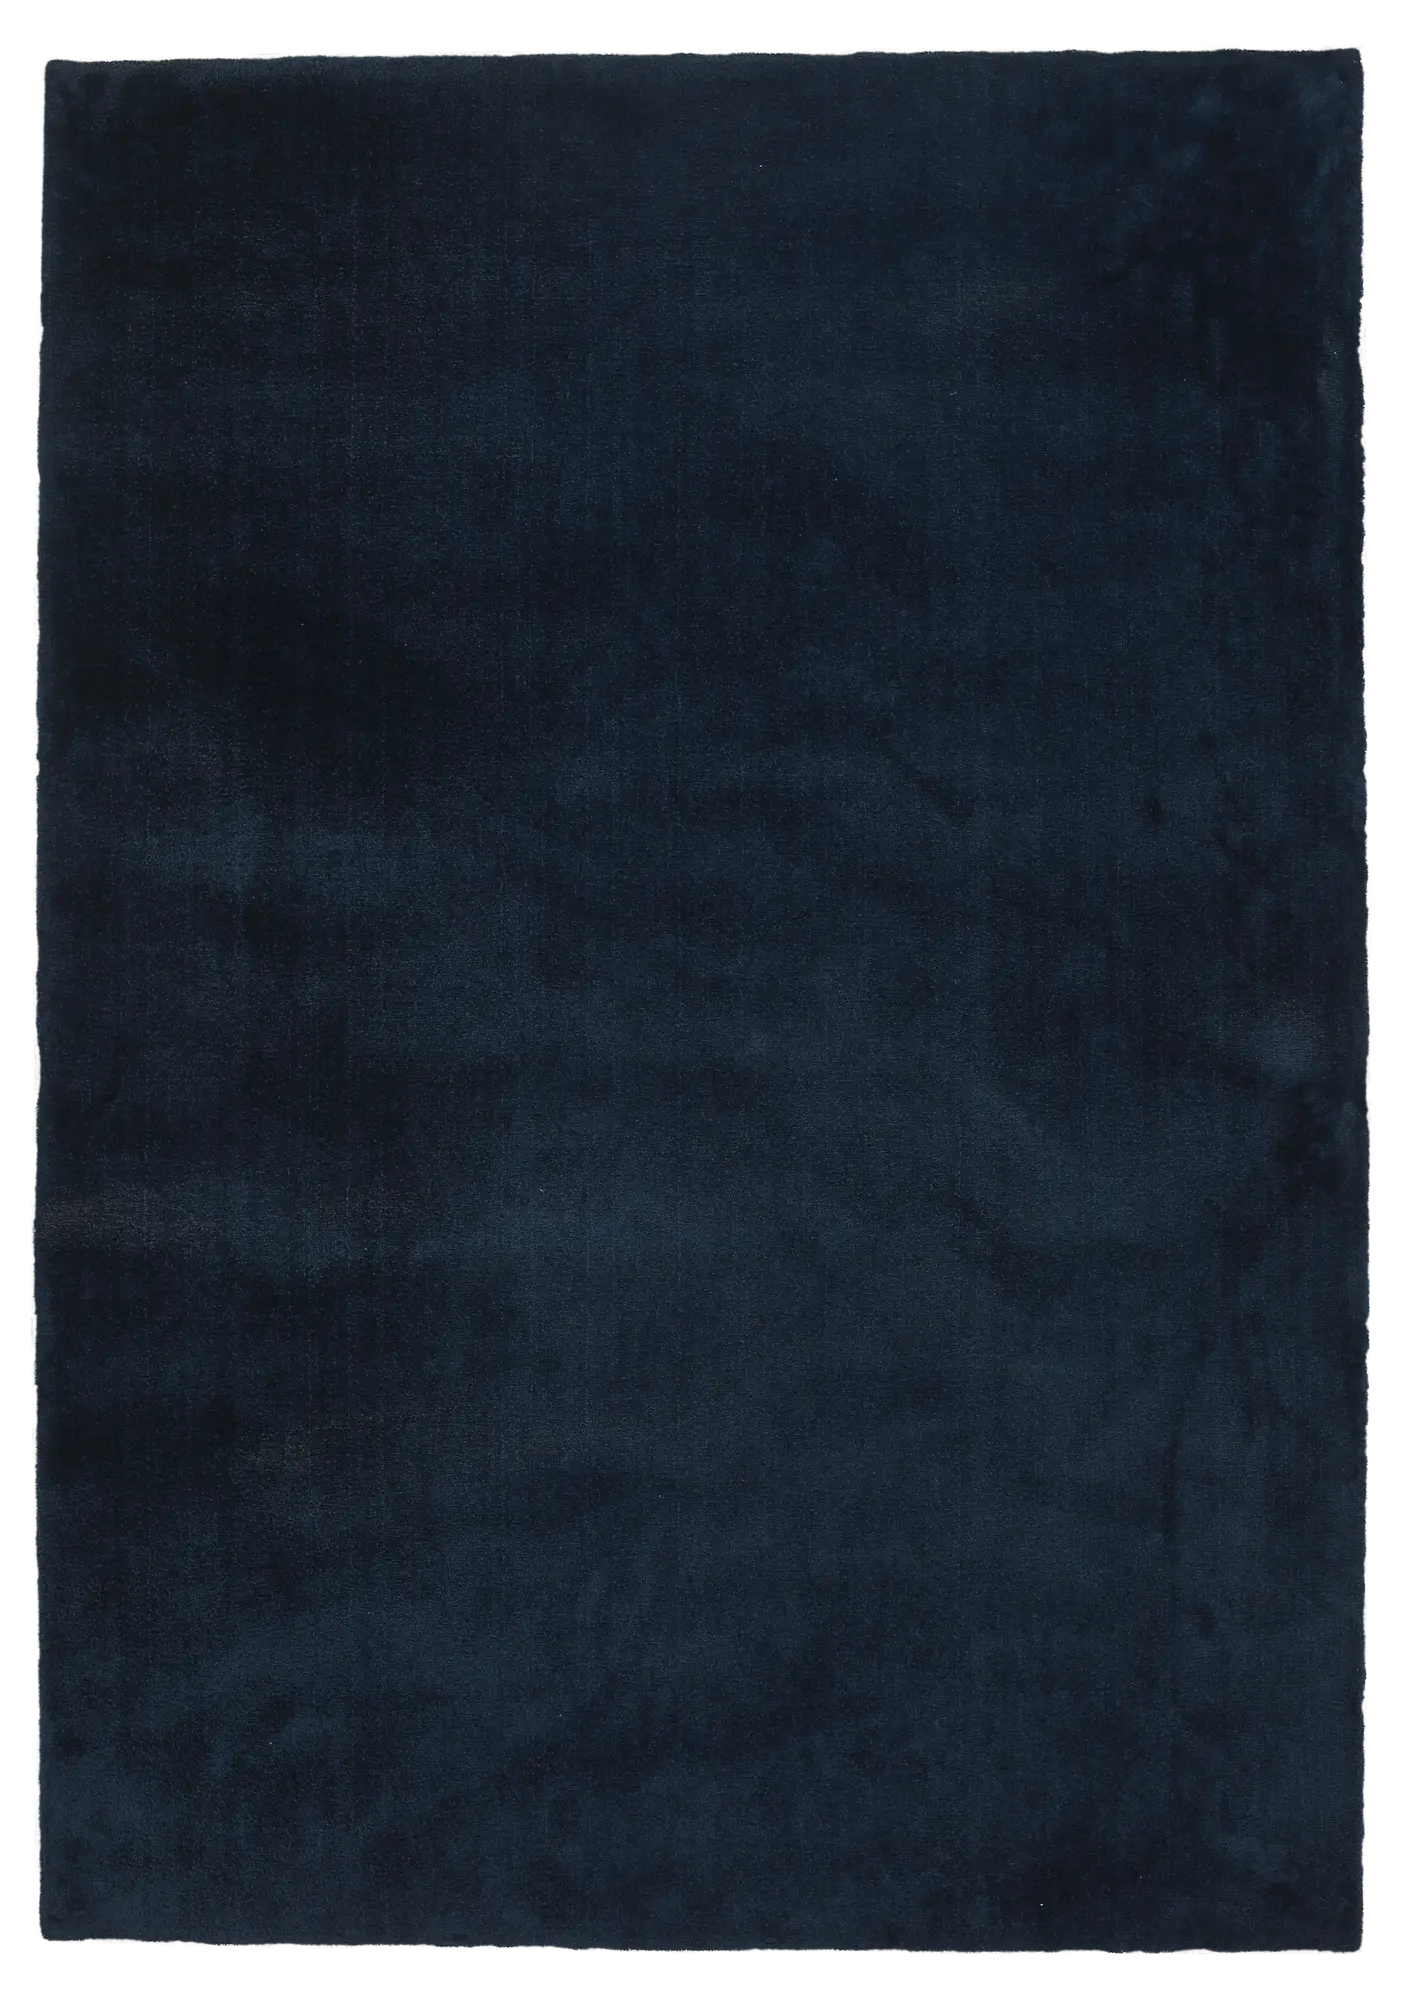 Alfombra poliamida touch azul oscuro 160x230cm